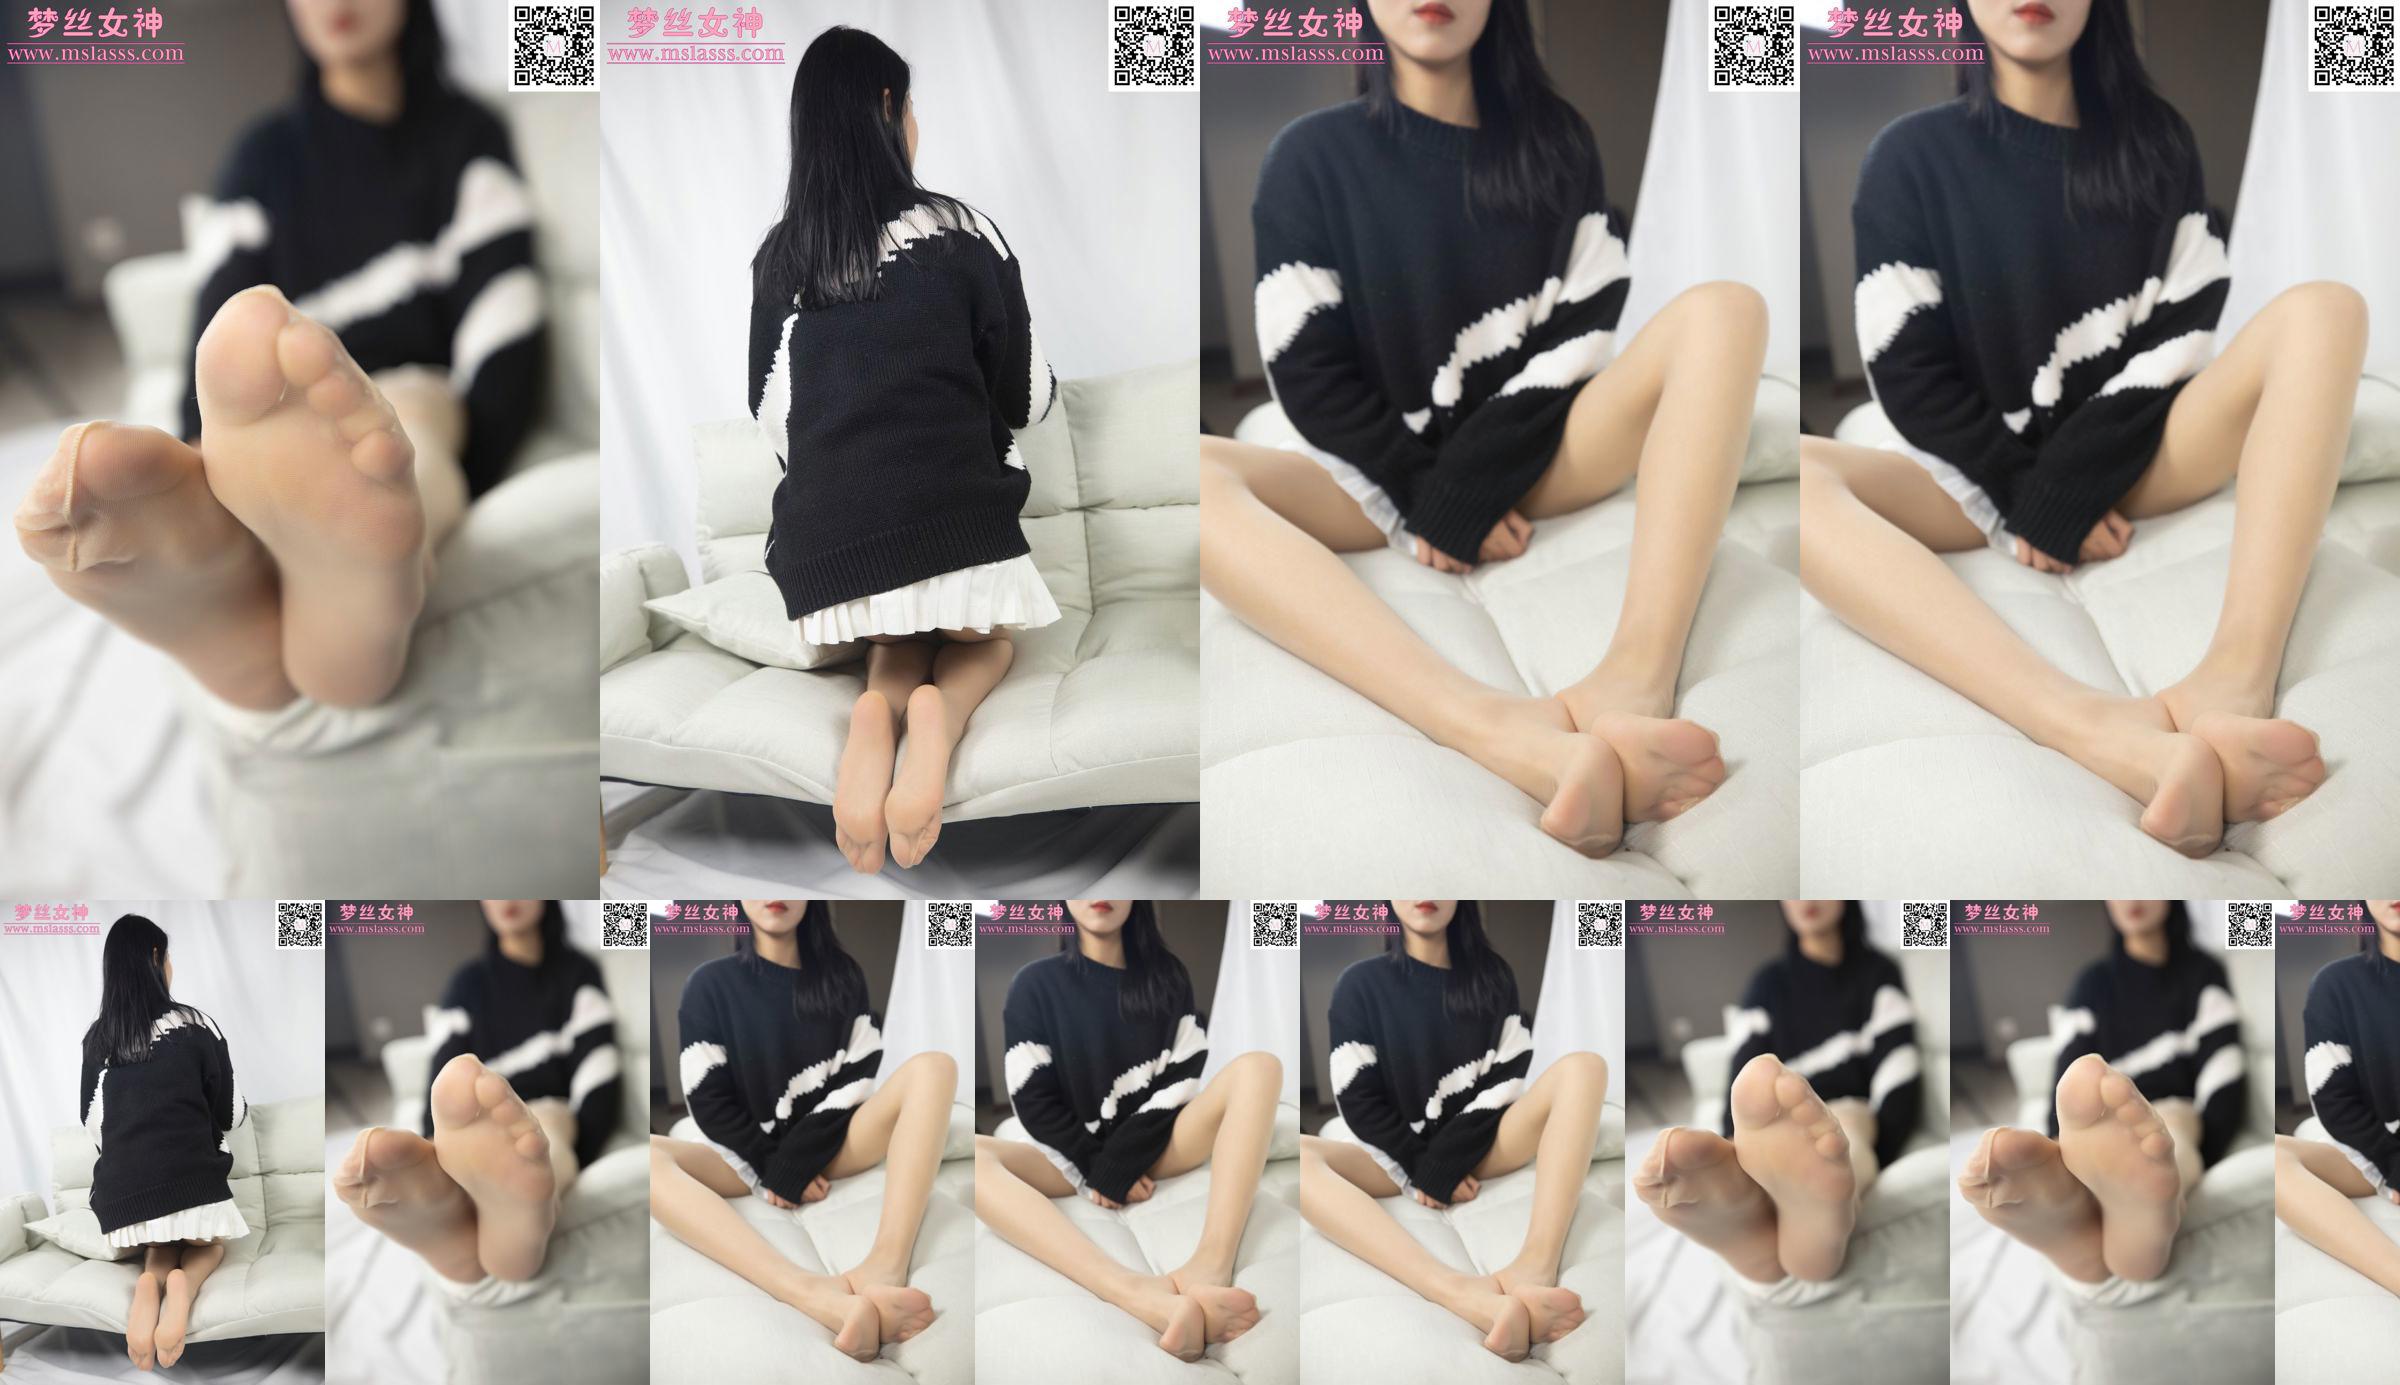 [Goddess of Dreams MSLASS] Sweter Xiaomu nie może powstrzymać jej długich nóg No.b62851 Strona 7